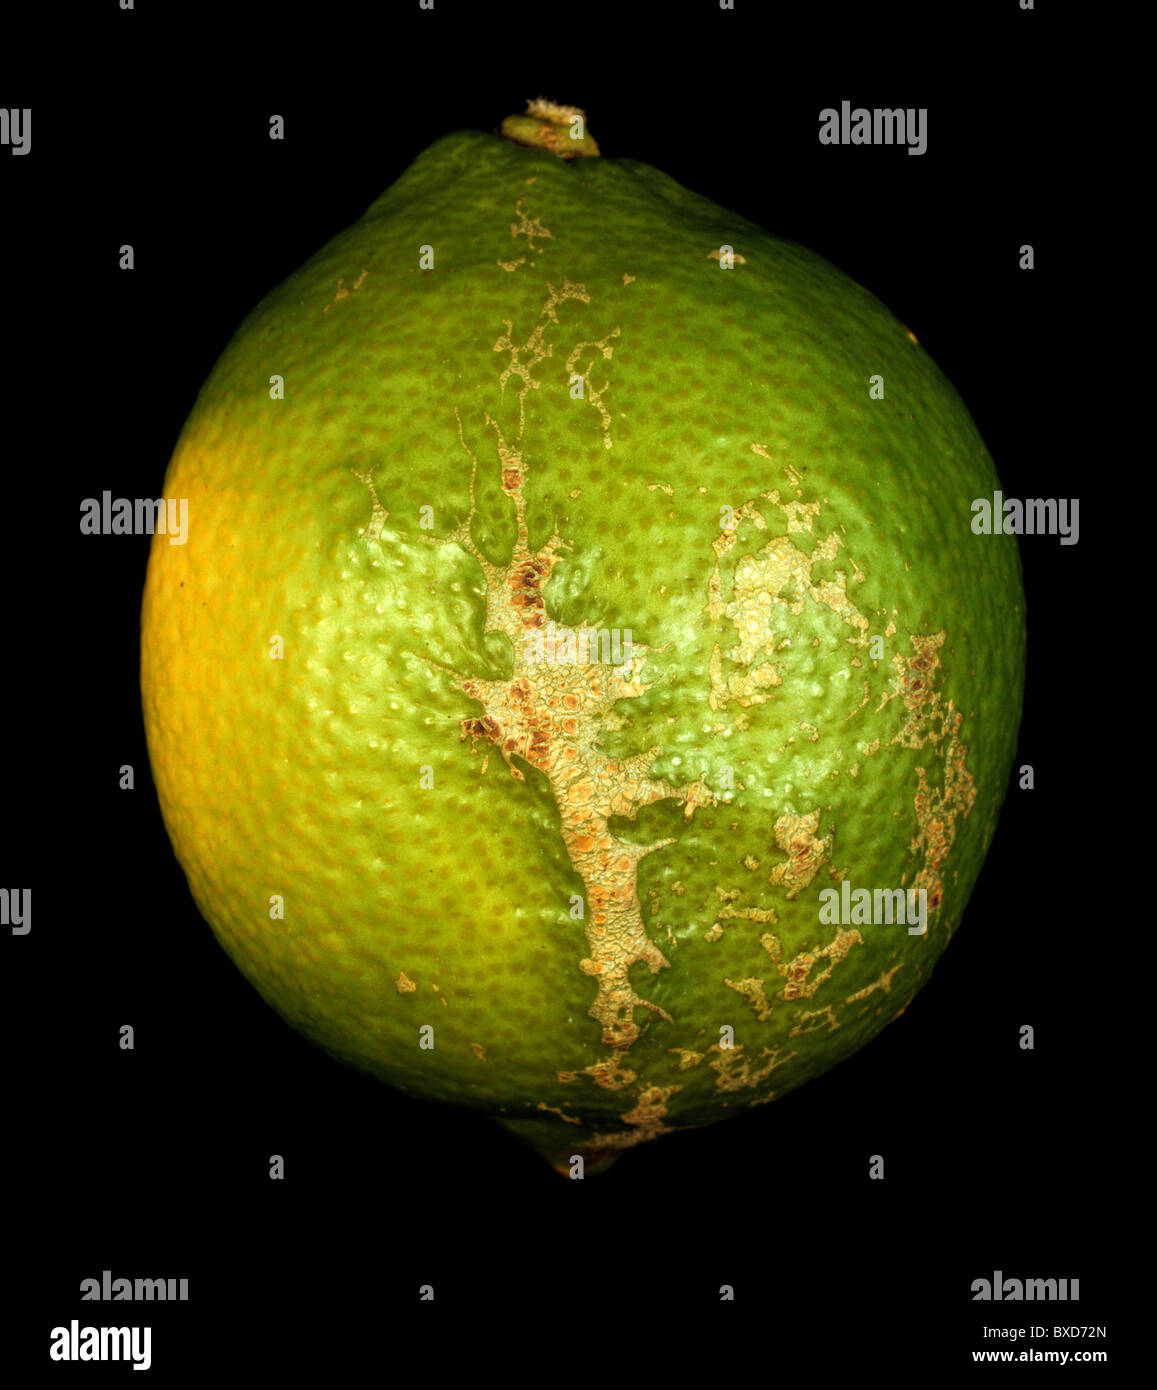 Viento cicatrices en la piel de limón - el daño a la fruta en el árbol. Foto de stock